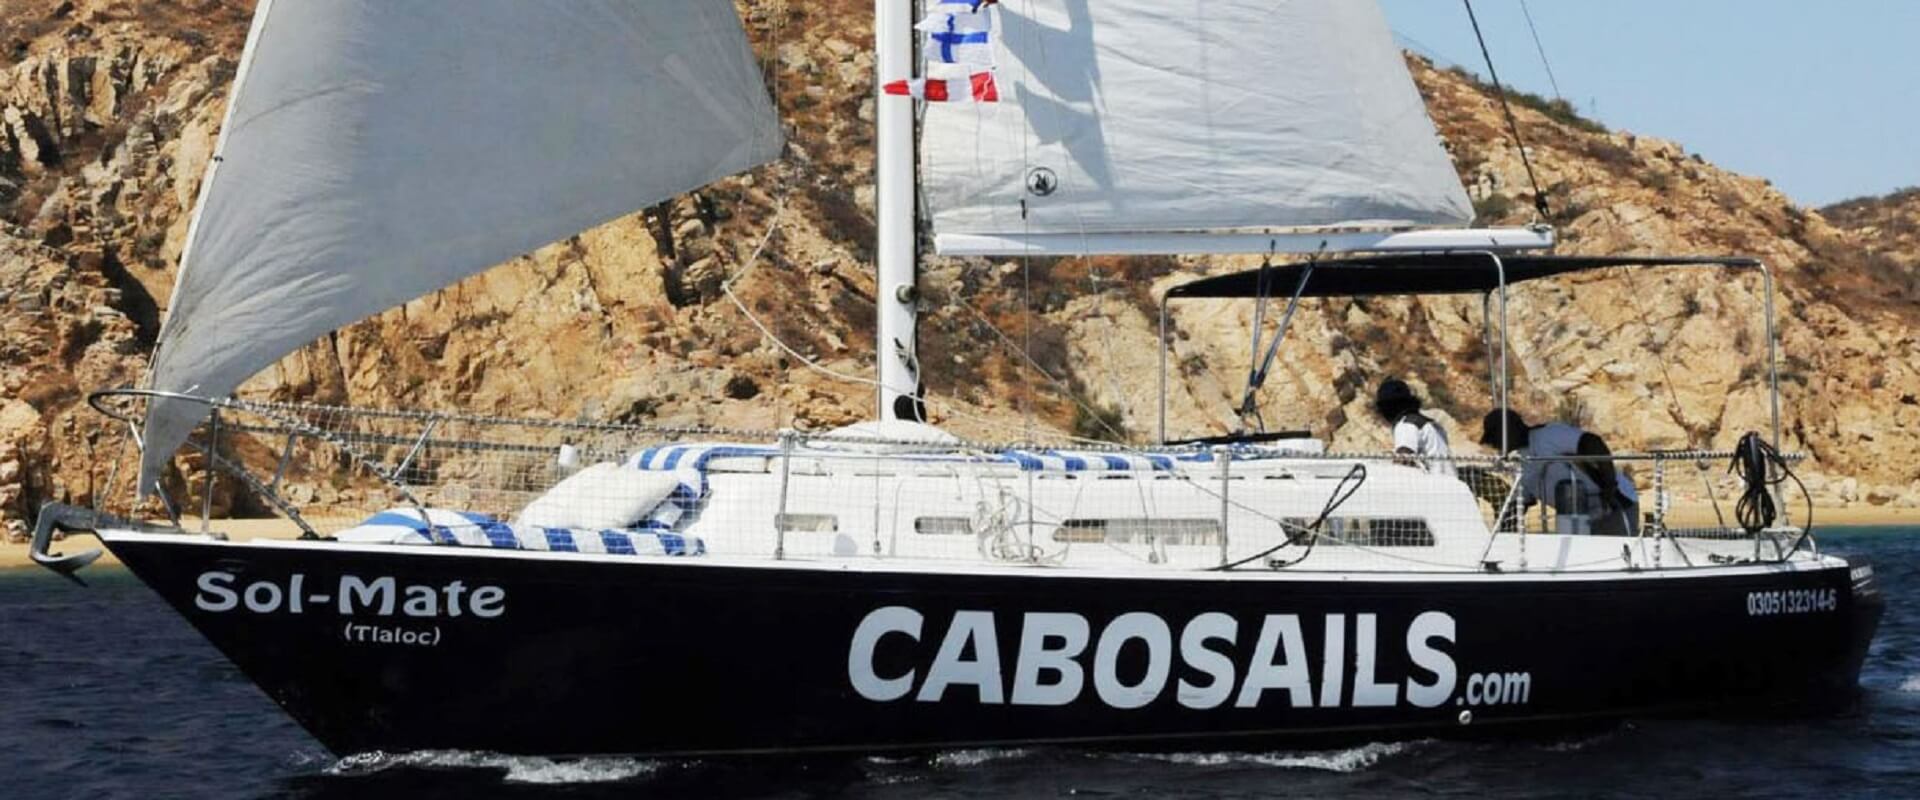 sailboat charter cabo